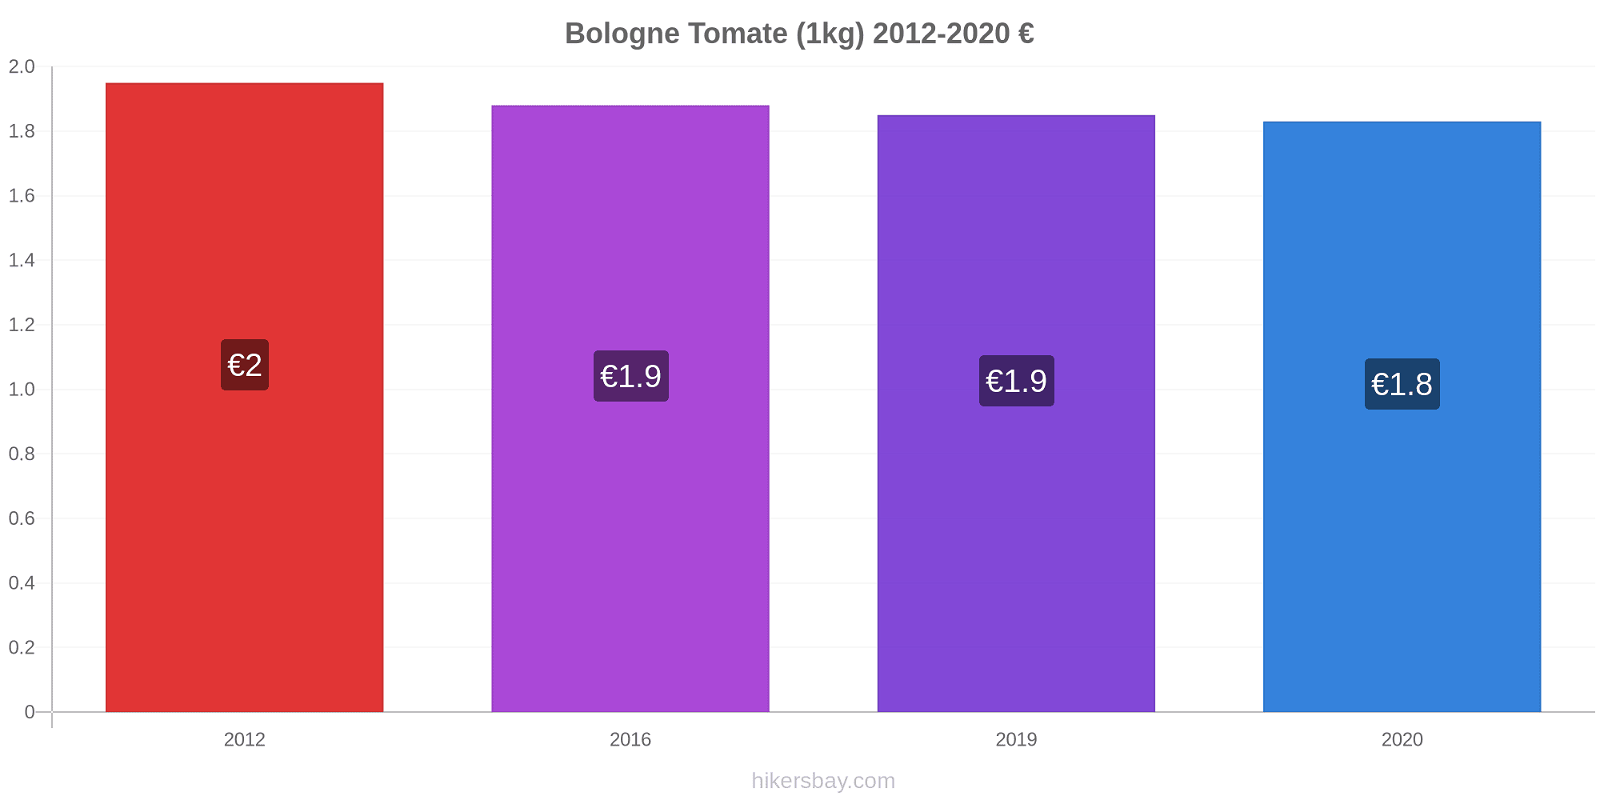 Bologne changements de prix Tomate (1kg) hikersbay.com